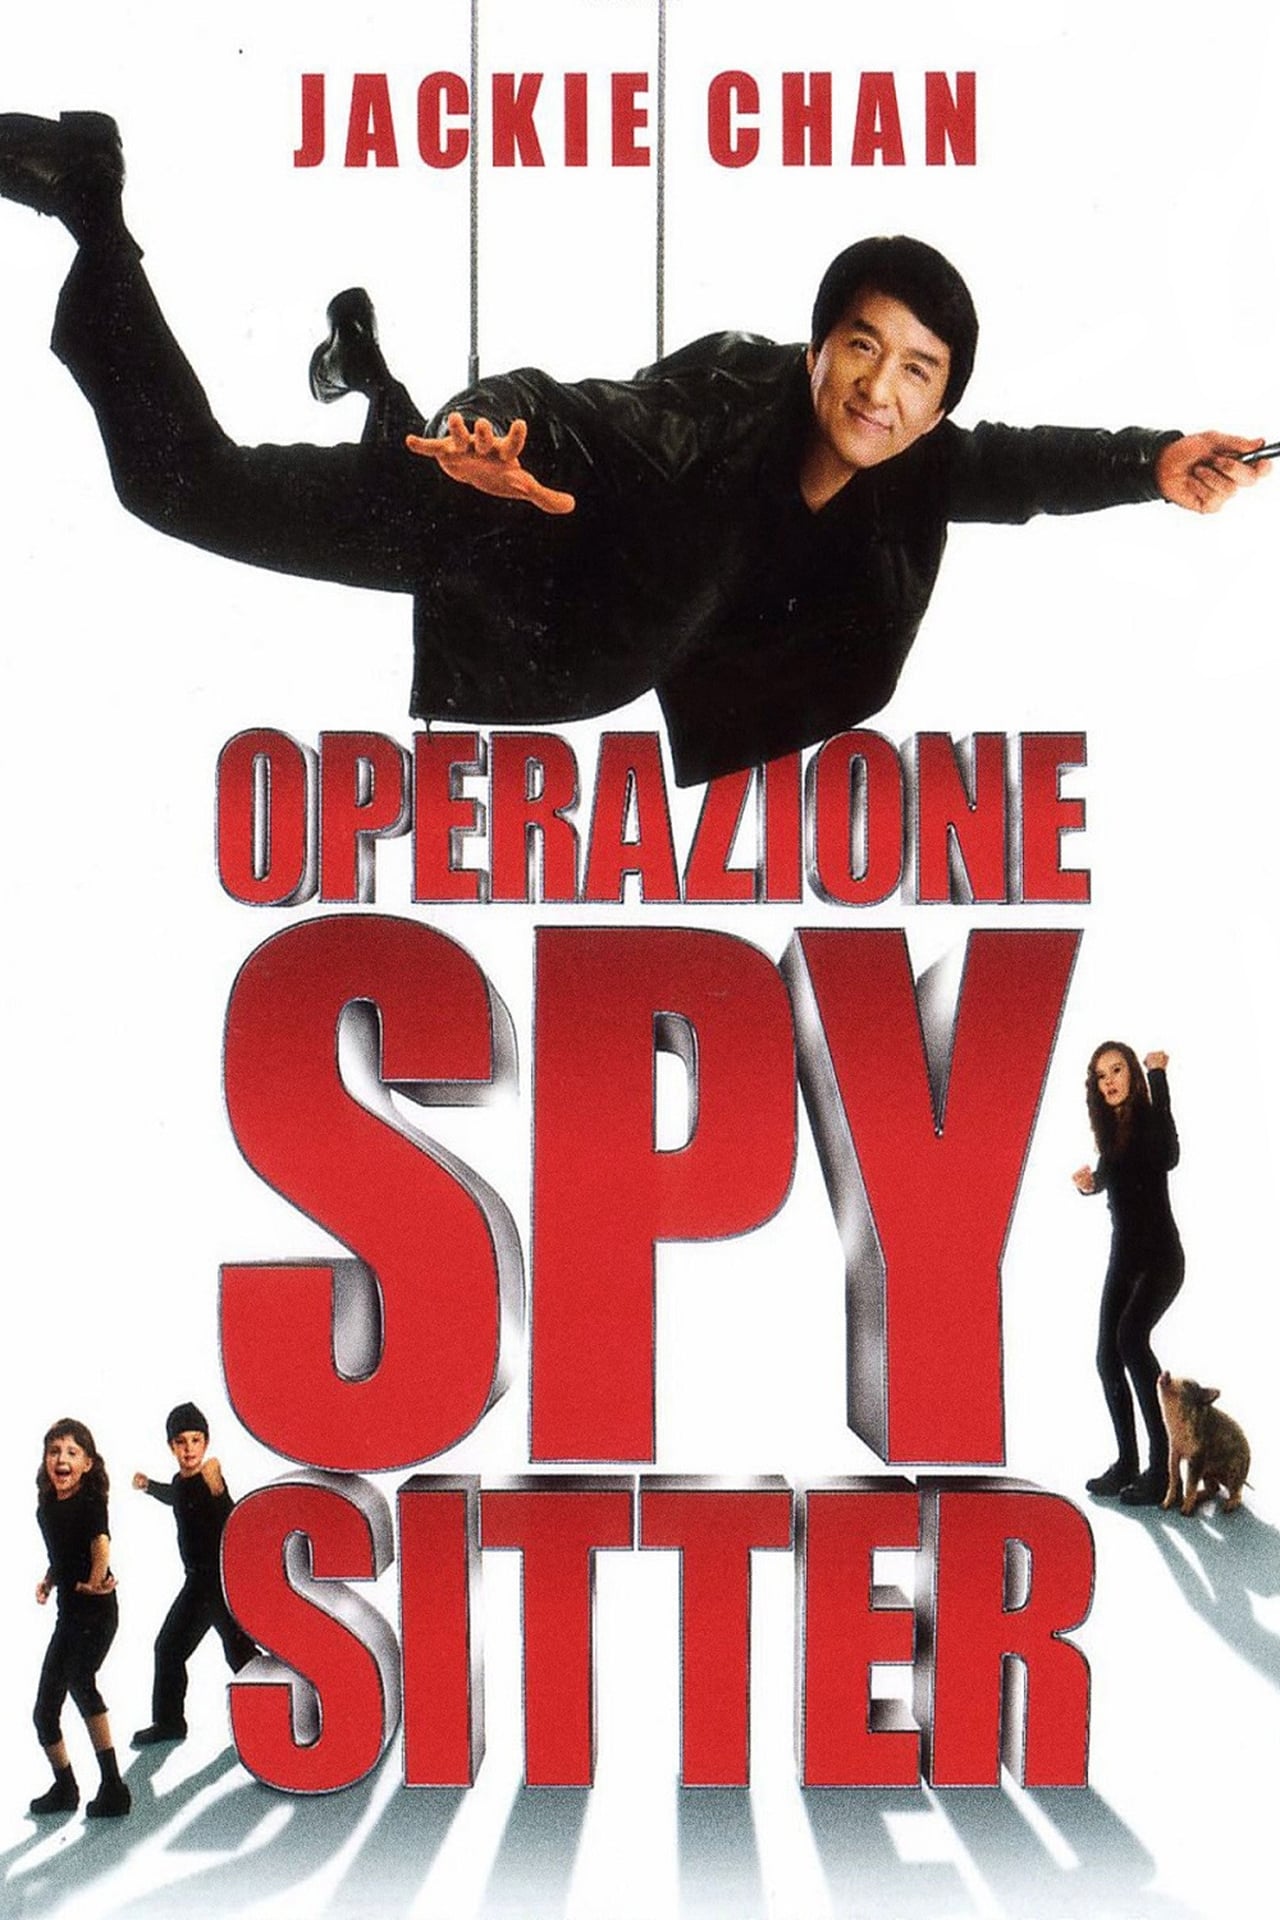 watch the movie spy next door